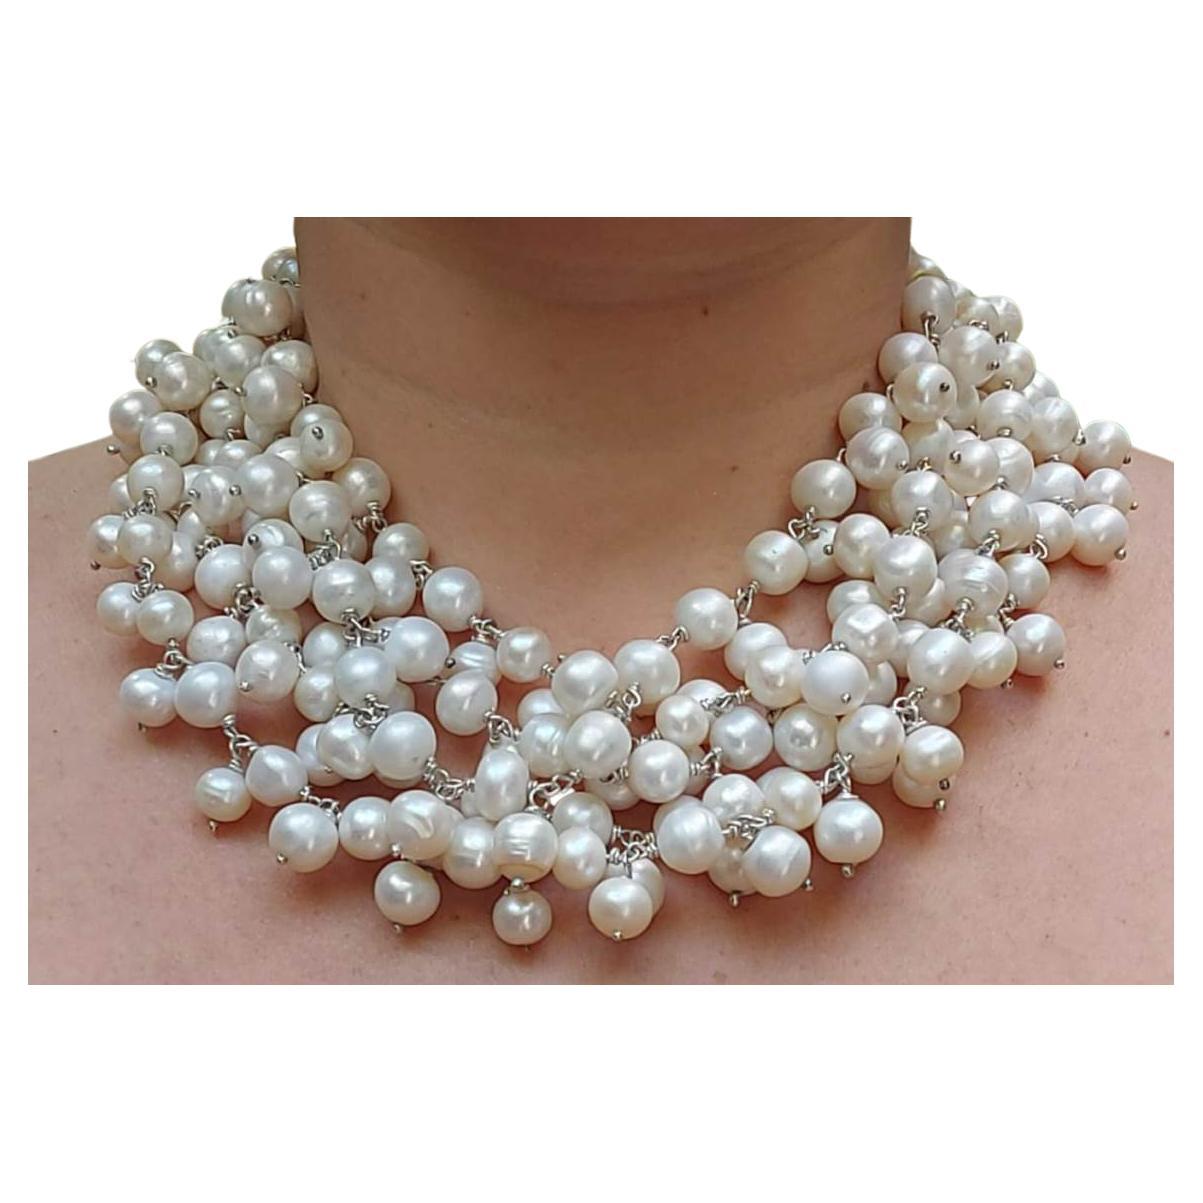 Einzigartige handgefertigte Halskette aus Silber und Perlen